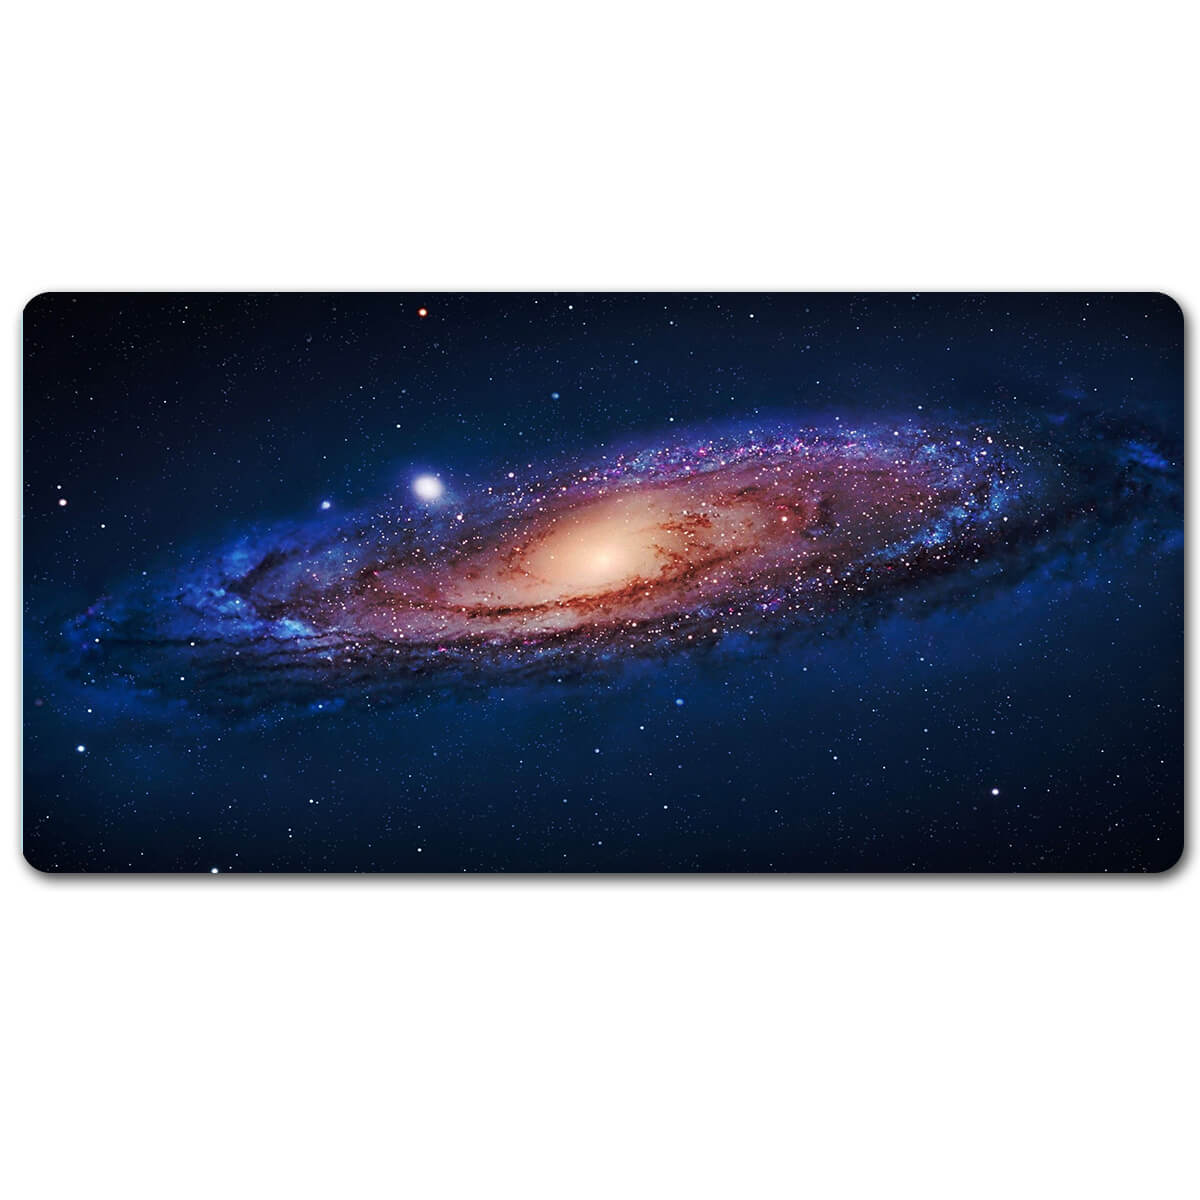 Galaxy Nebula Mouse Pad